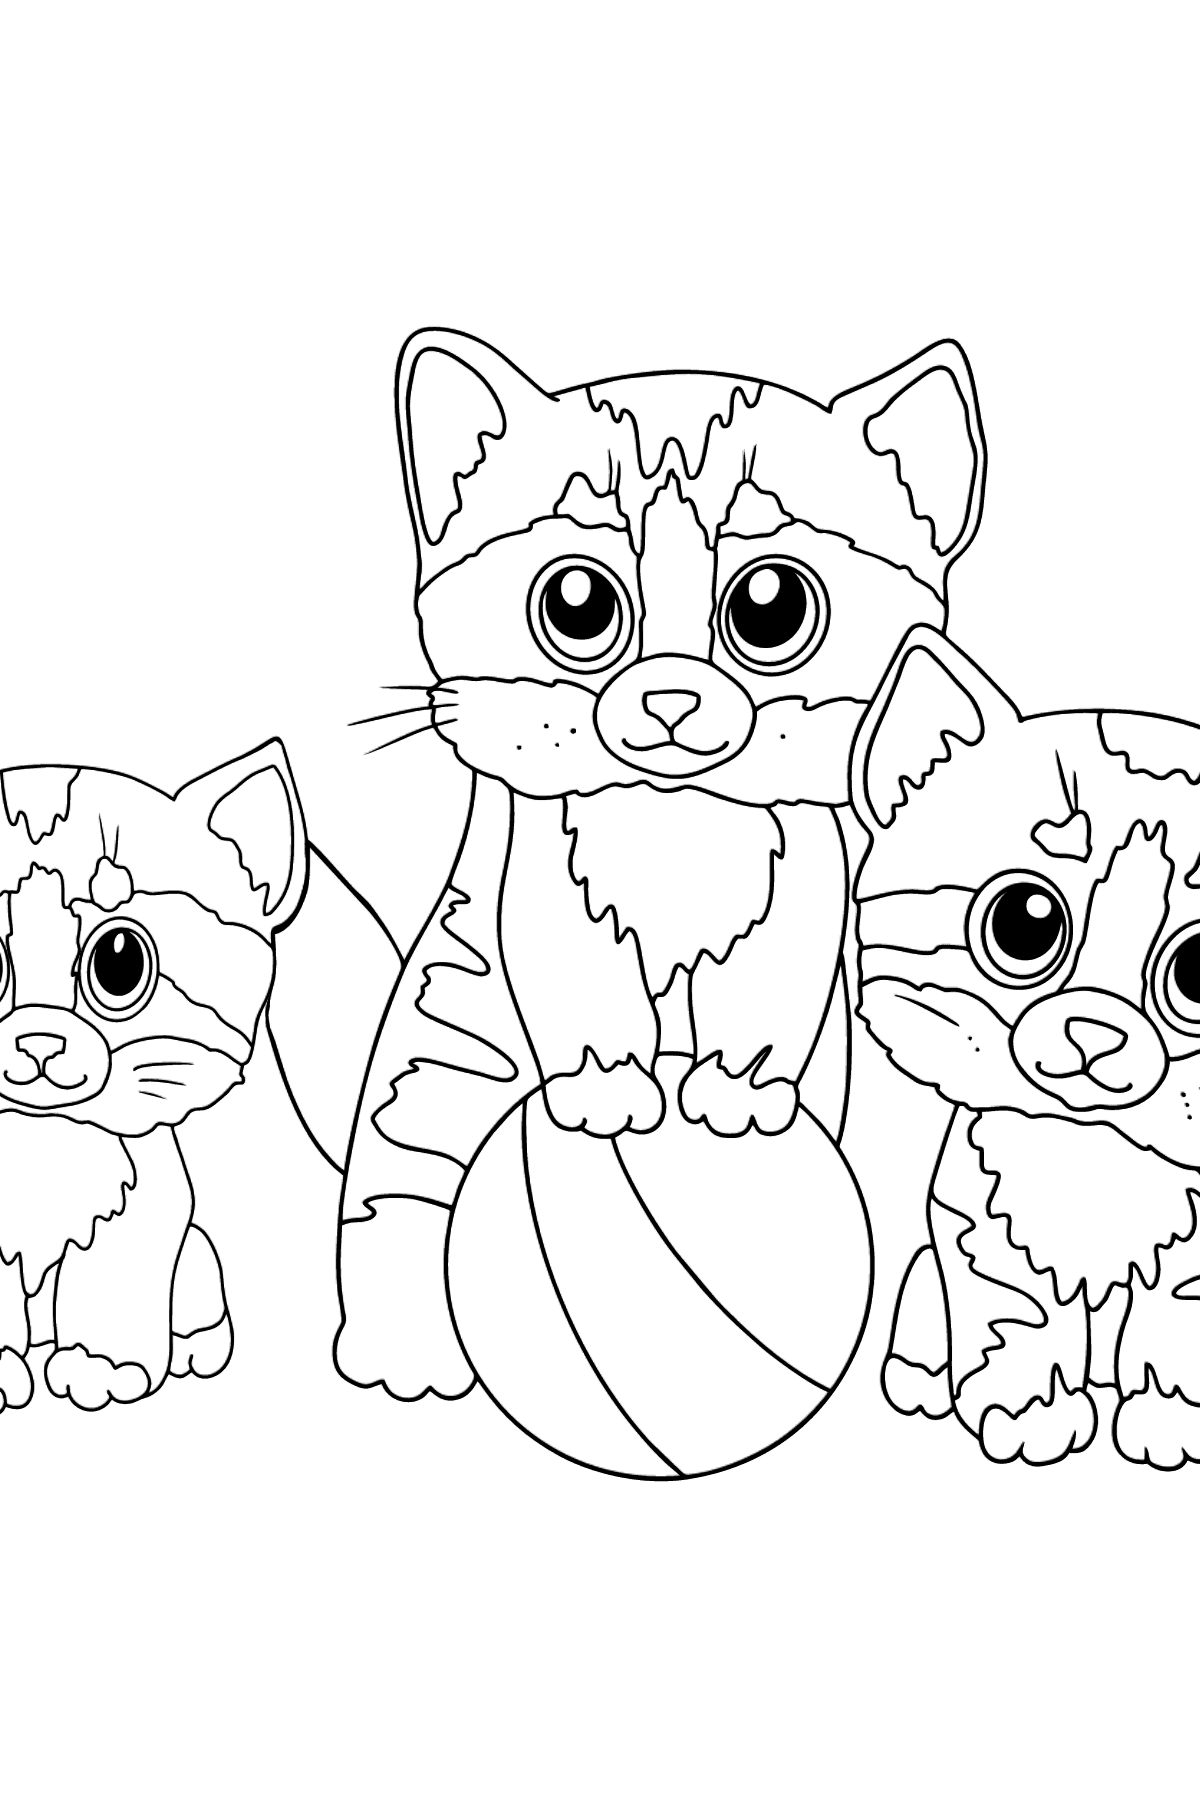 Раскраски Три кота распечатать бесплатно на листах формата А4